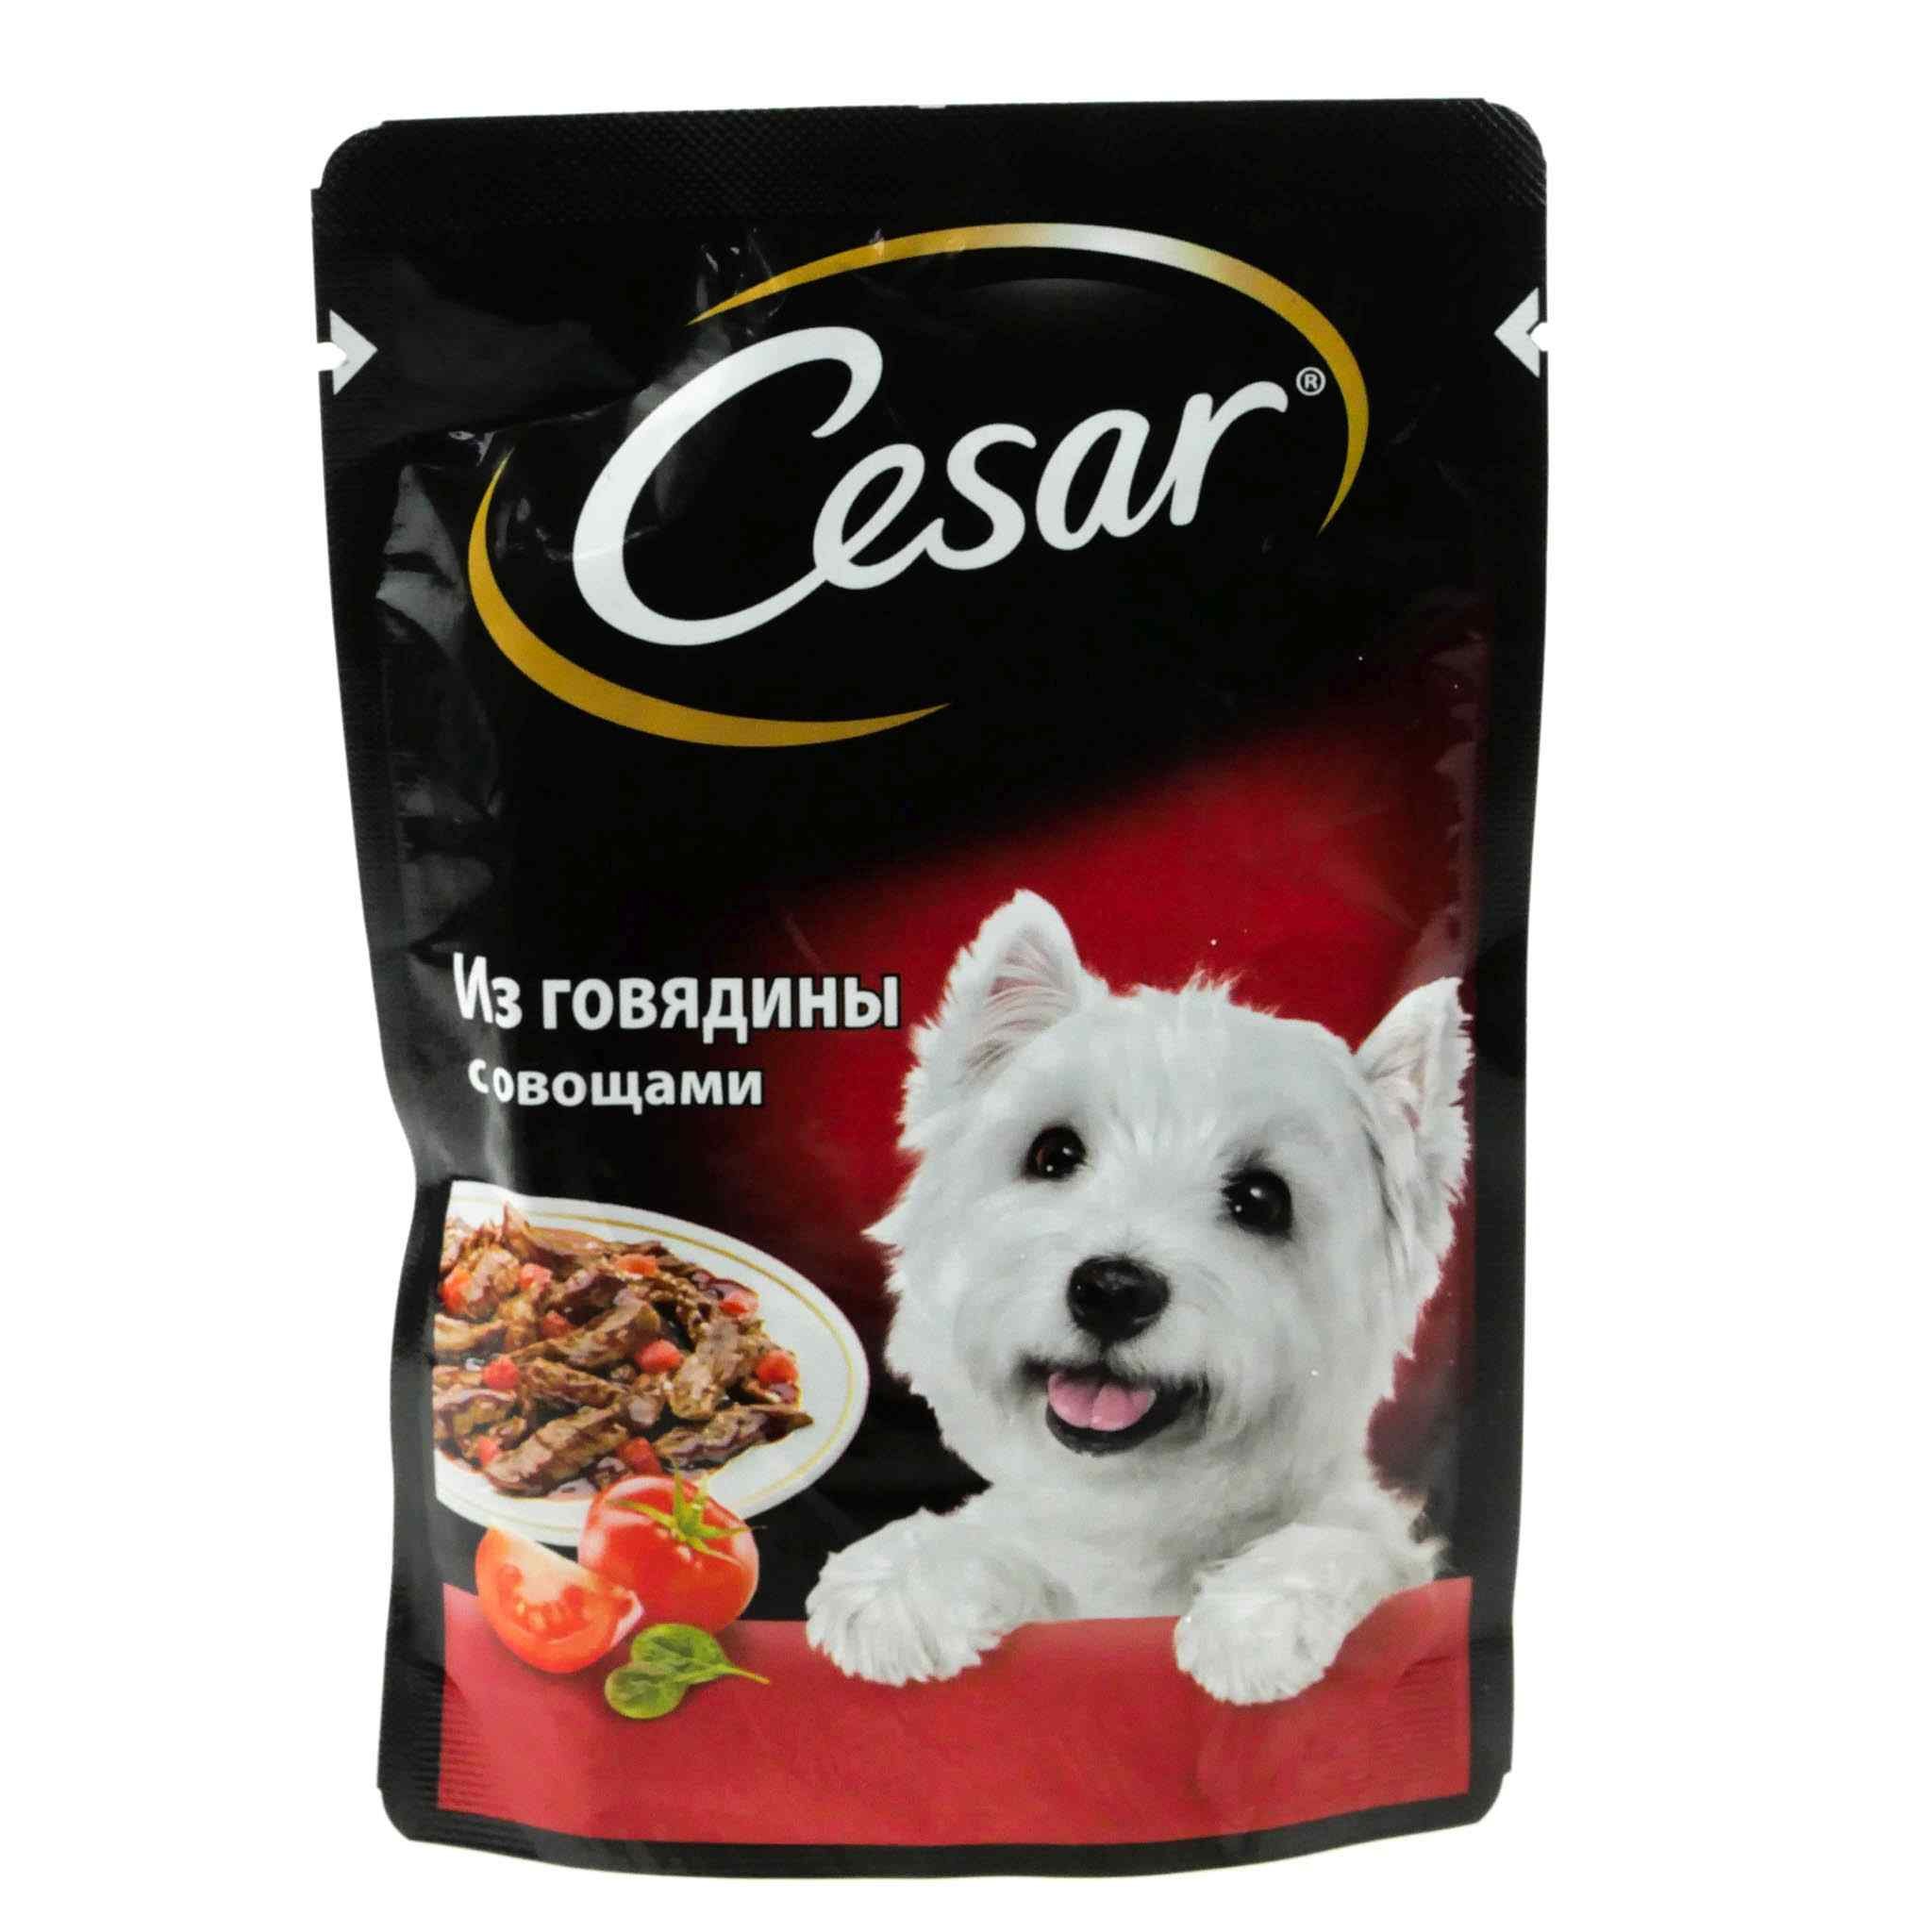 Смешиваю корм для собак. Корм говядина с овощами Cesar 85г. Cesar корм для собак говядина с овощами 85г. Cesar корм для собак 85 г говядина.